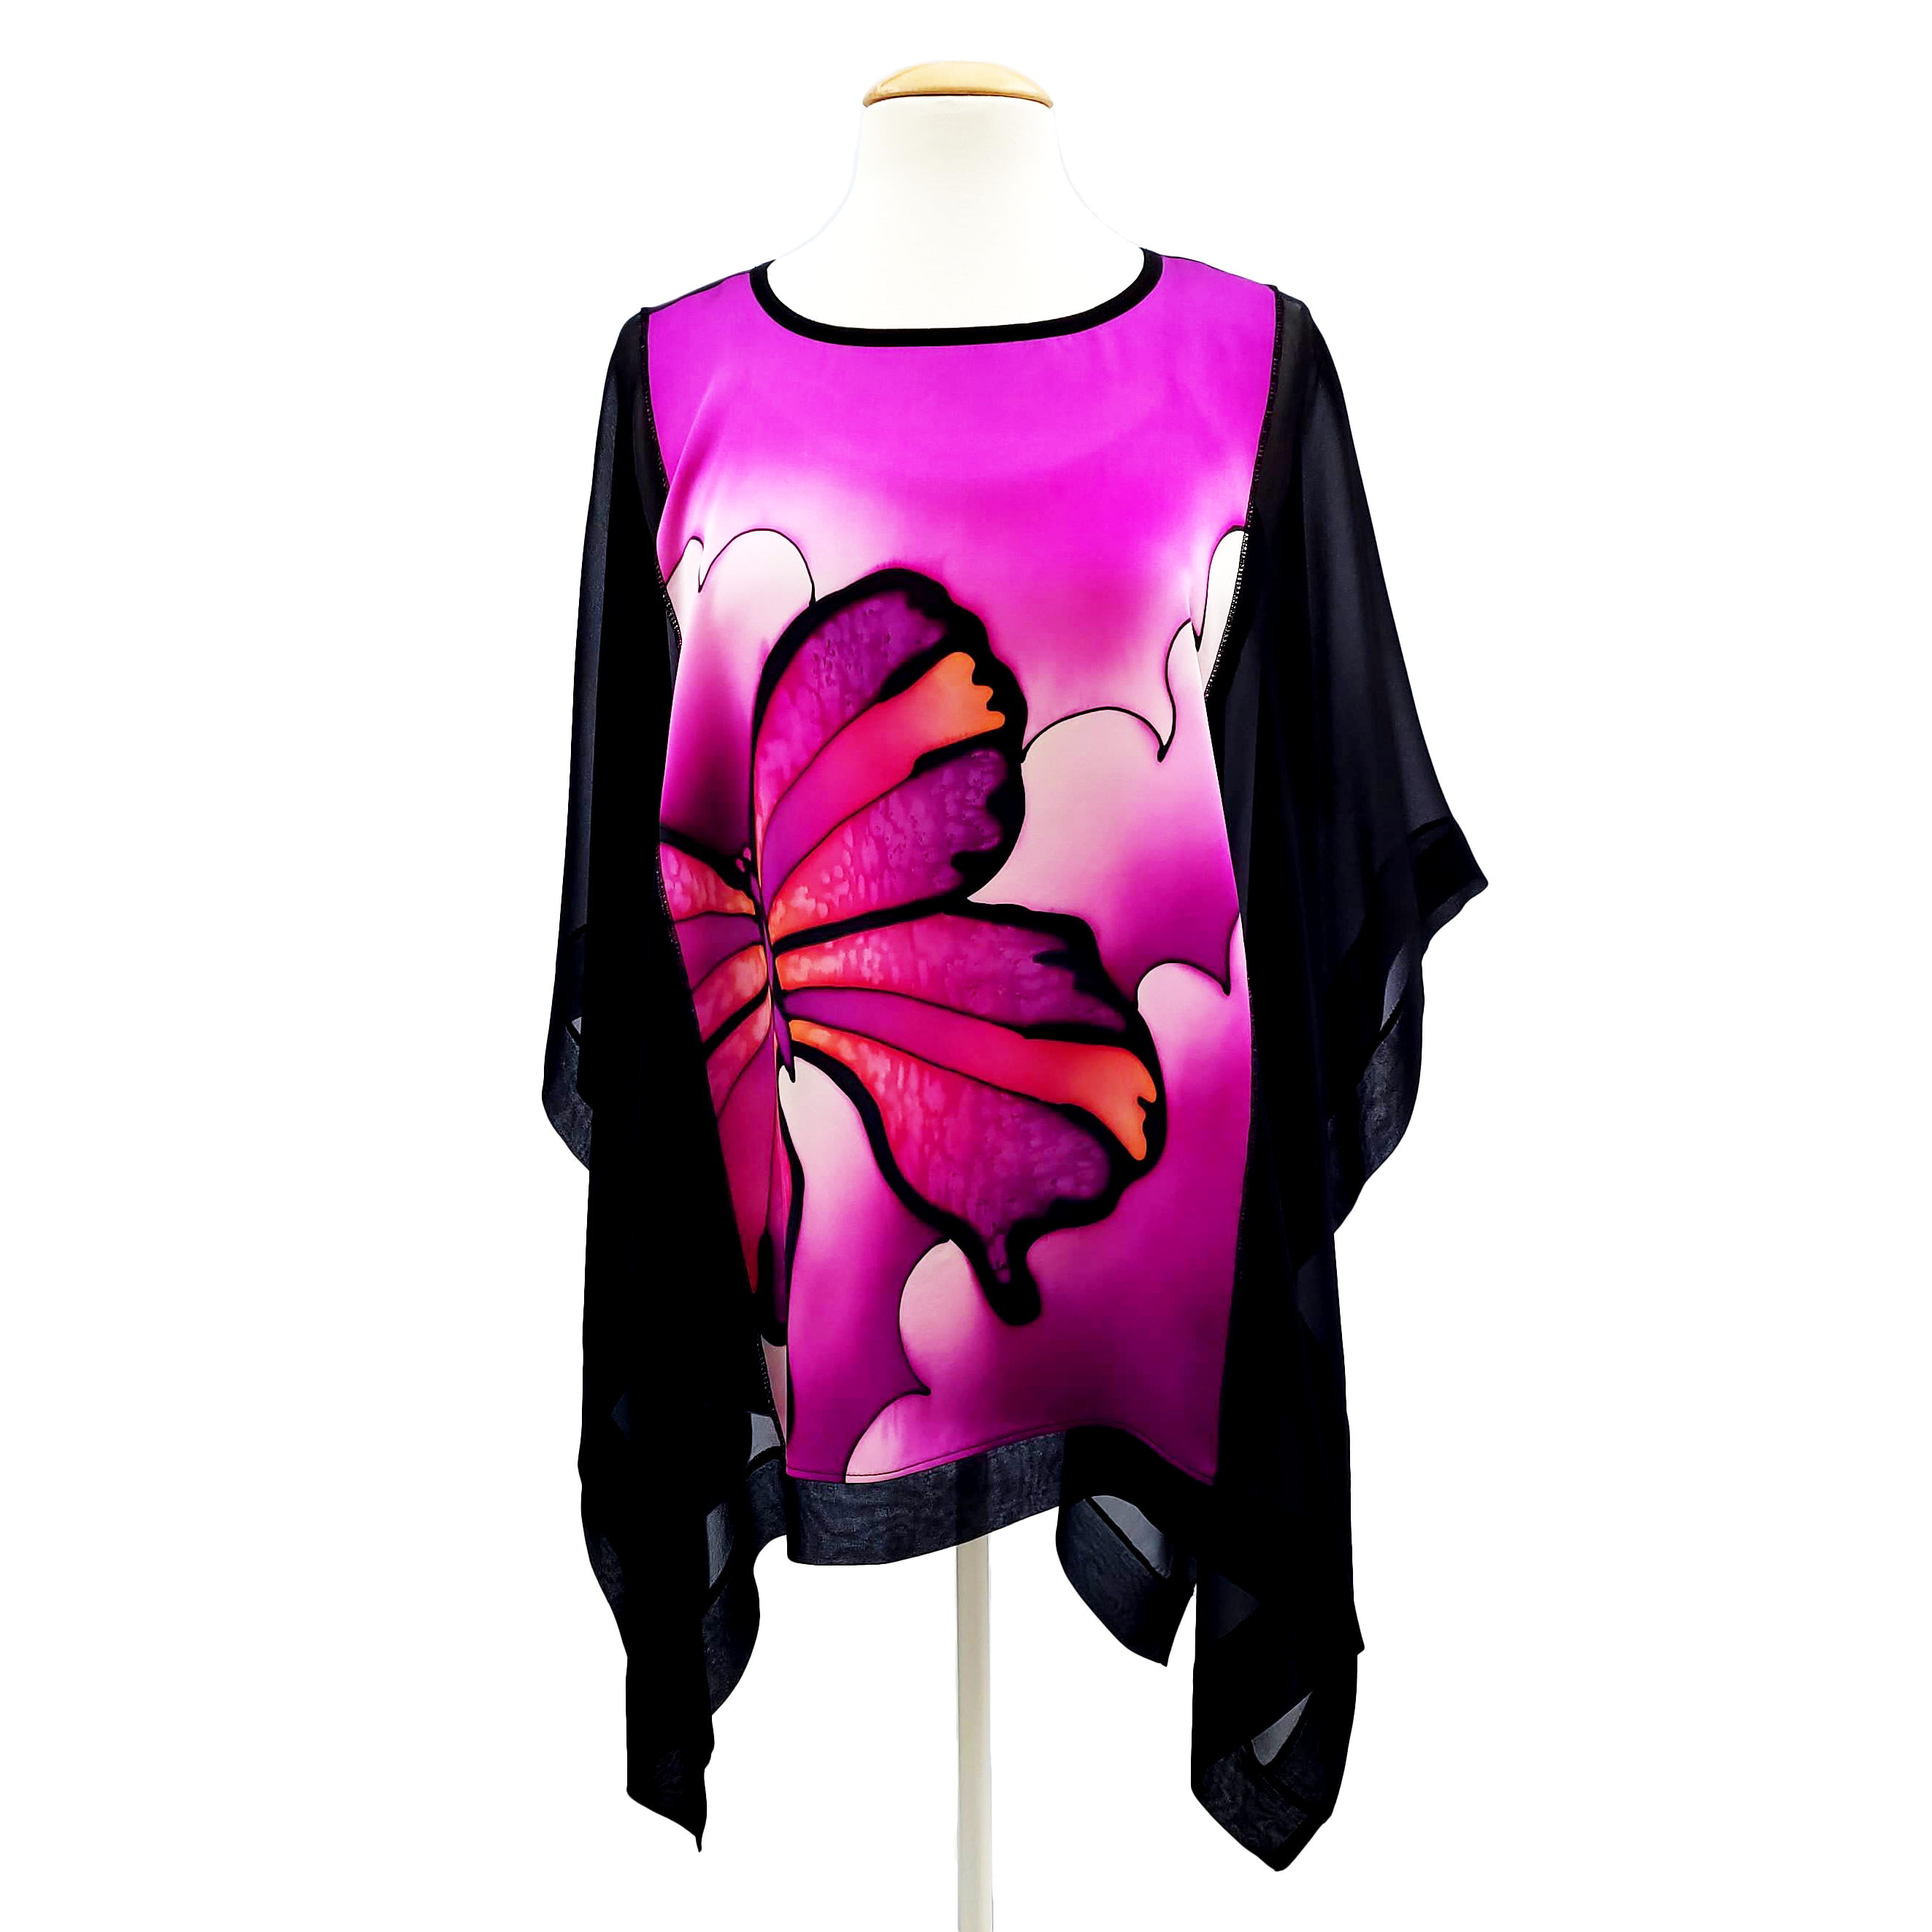 hand painted silk top pink butterfly art design  cruise wear fashion handmade by Lynne Kiel